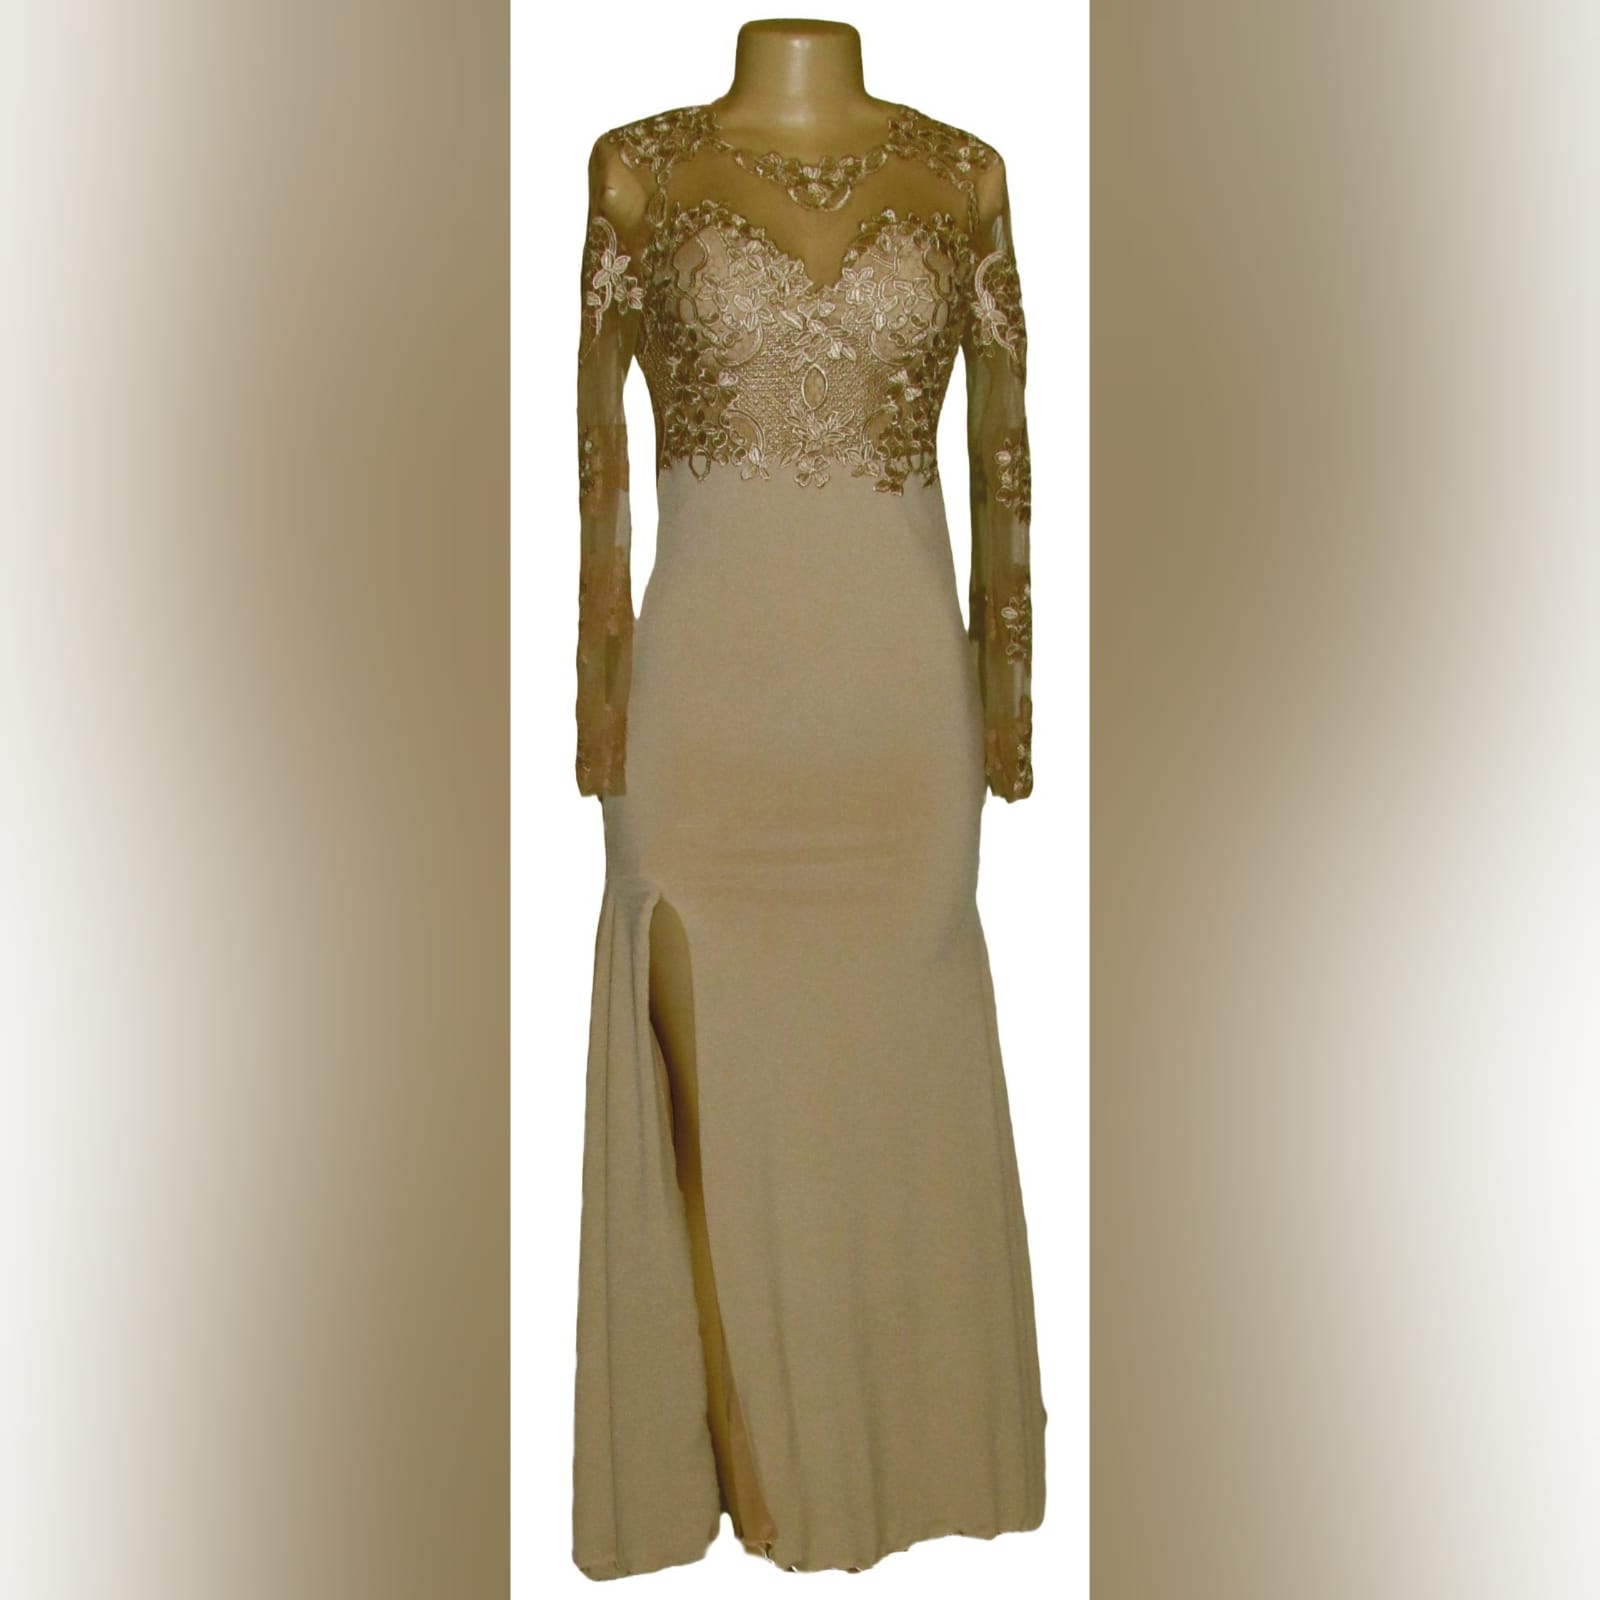 Beige Long Lace Bodice Prom Dress - Marisela Veludo - Fashion Designer